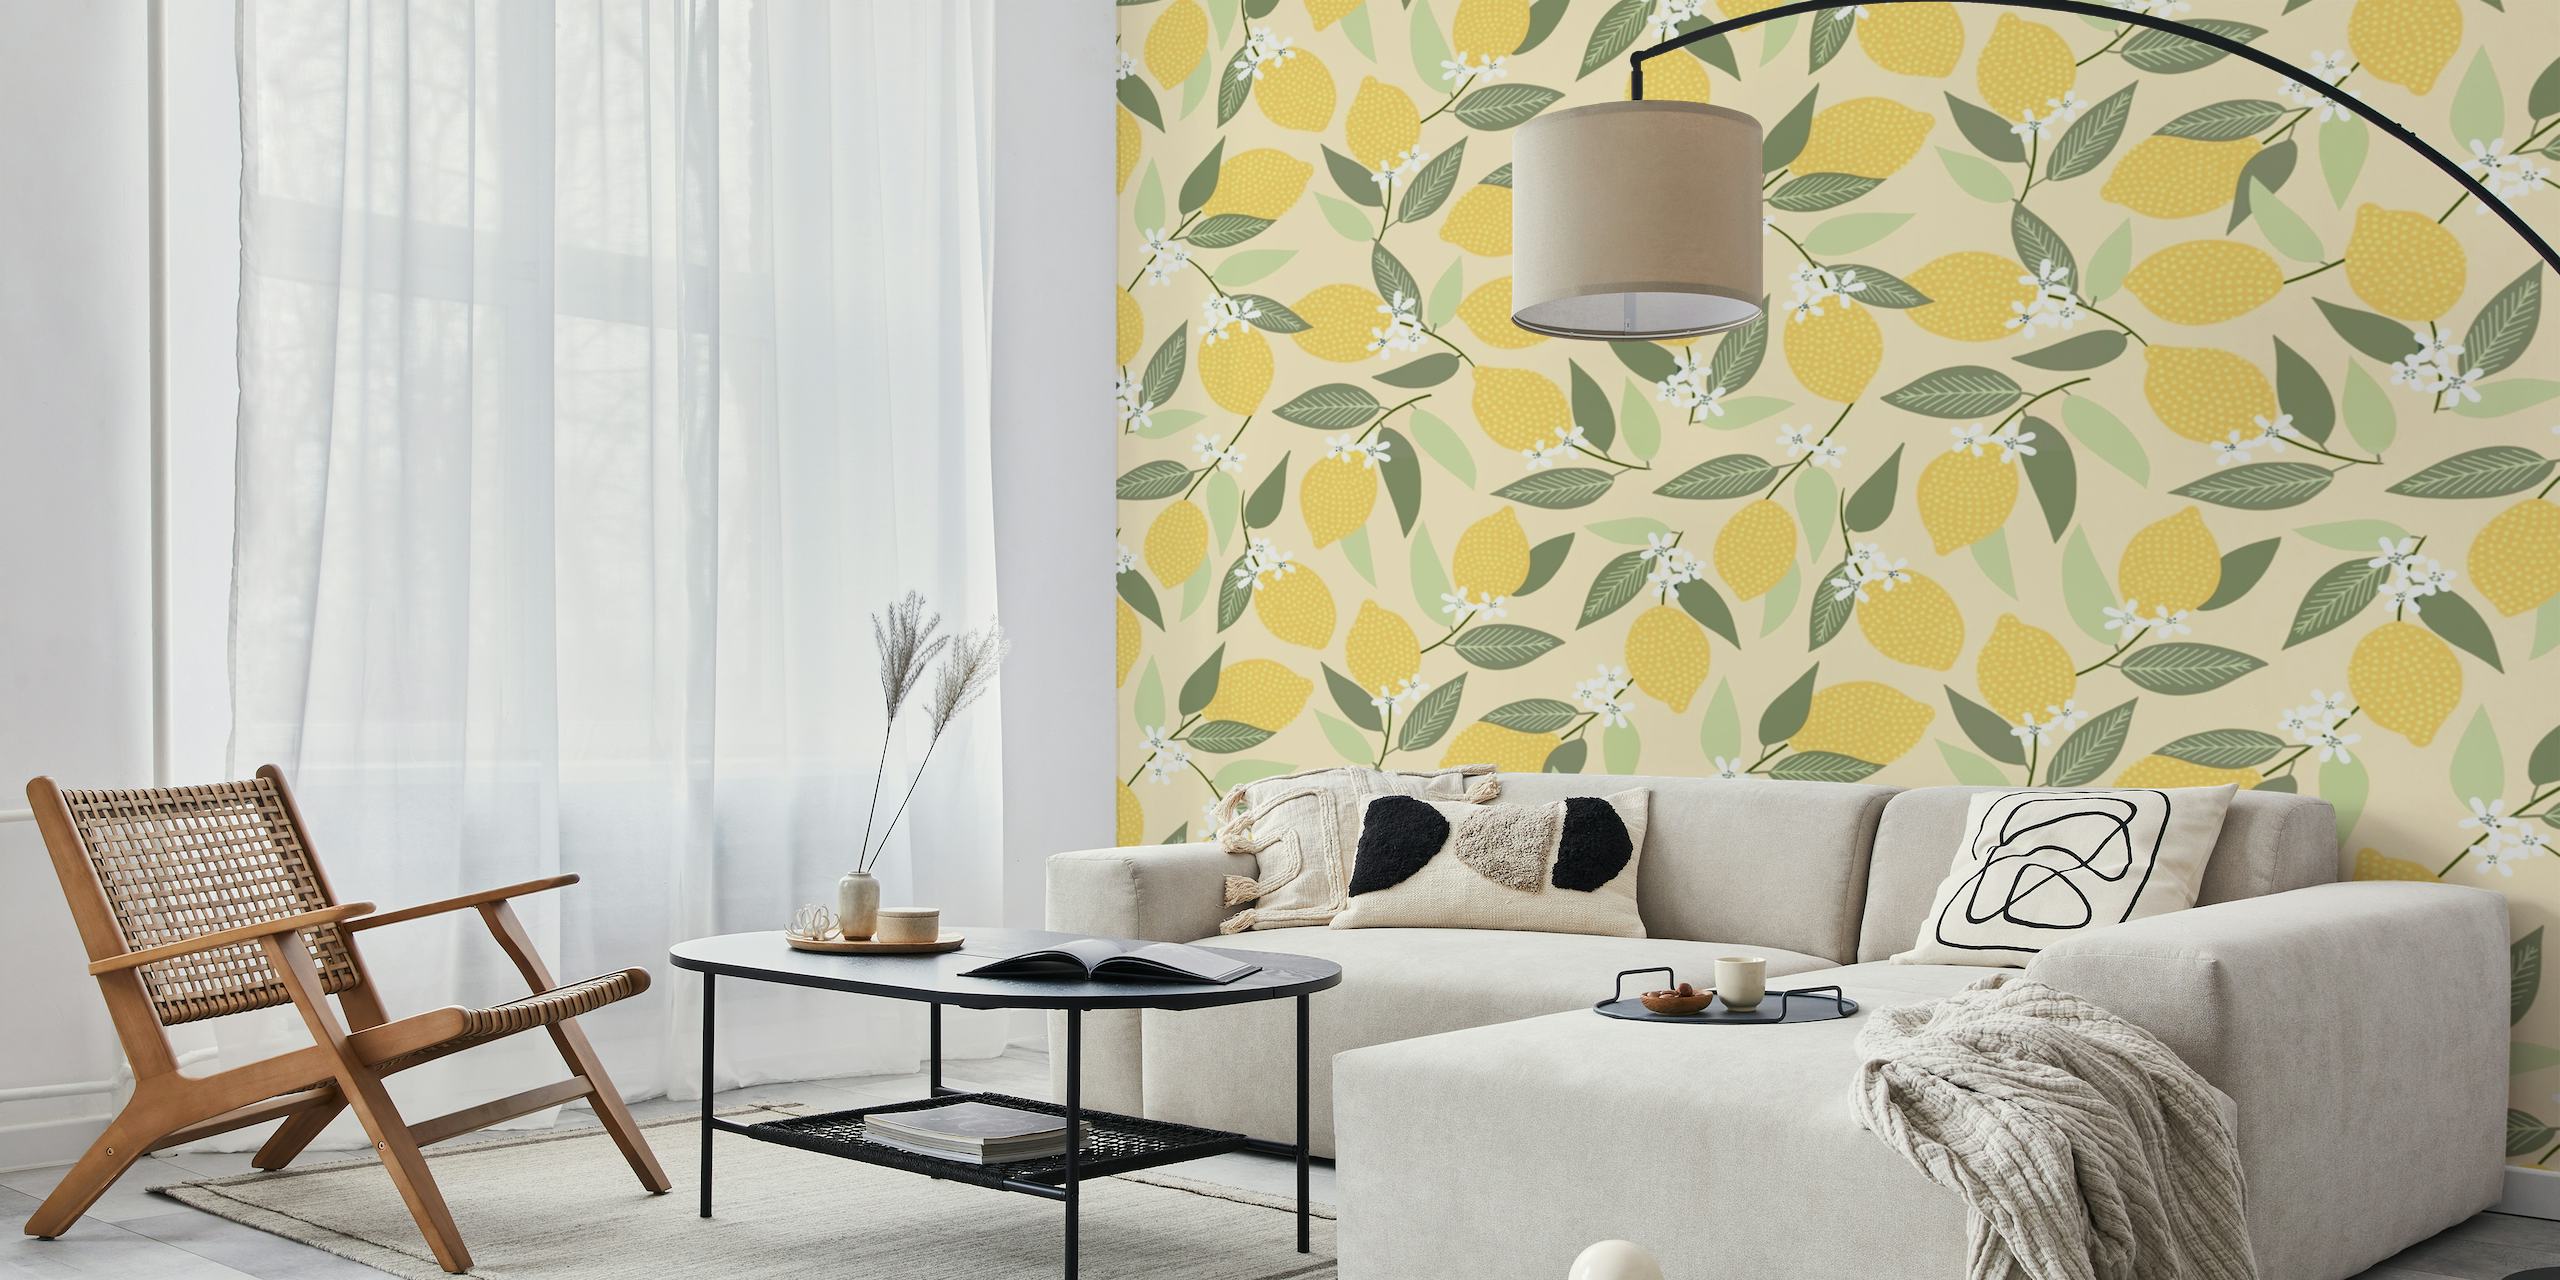 Fotomural vinílico de parede com padrão de limão e folhas para decoração de ambiente fresco